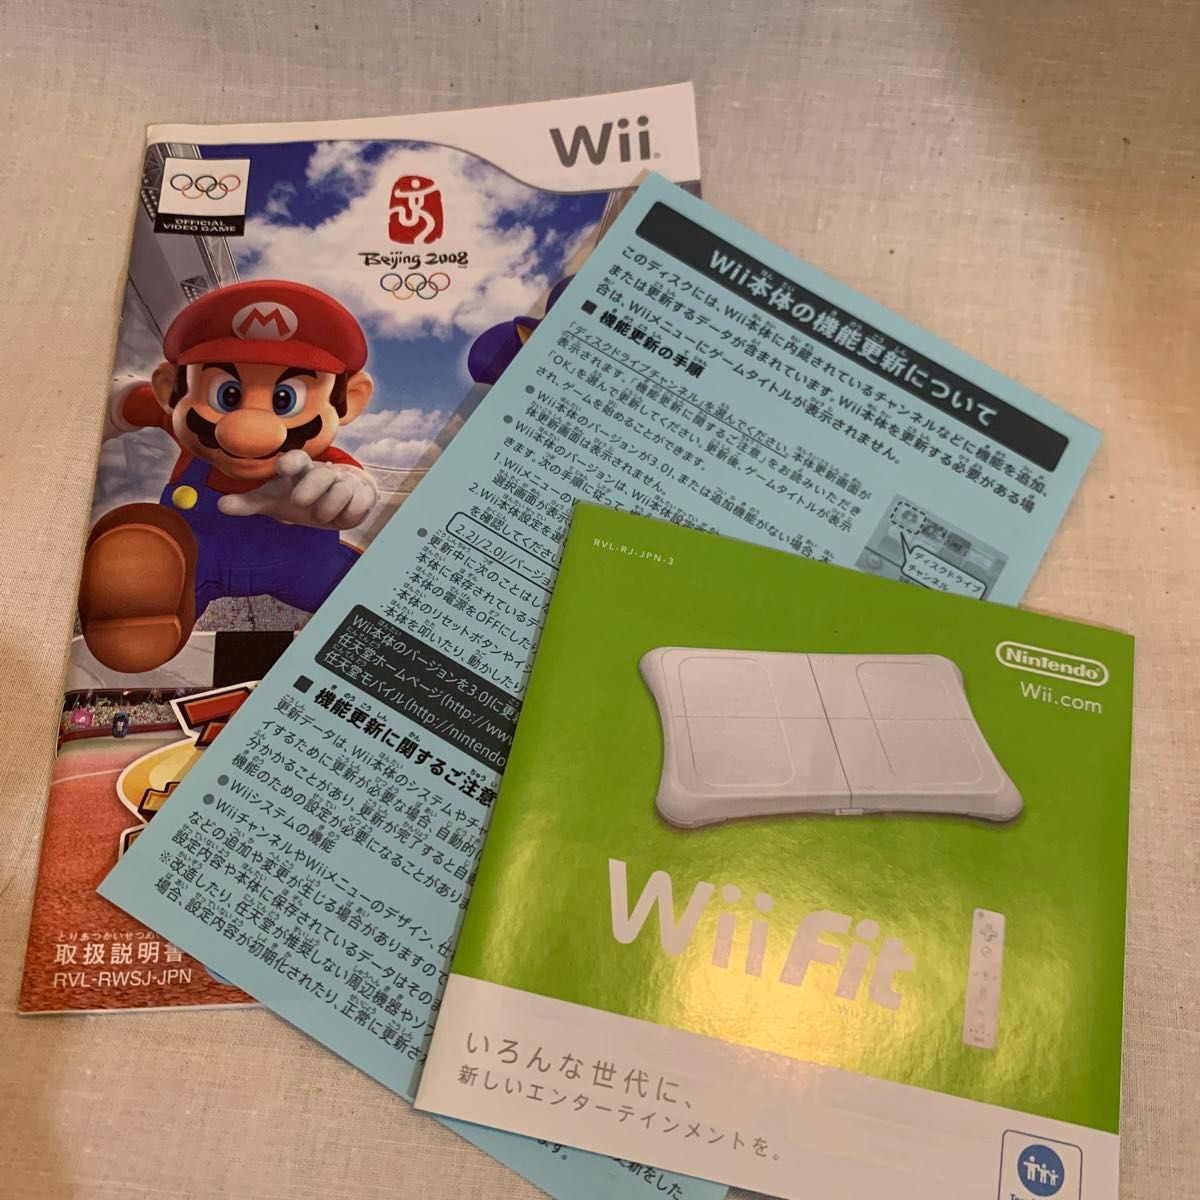 Wii ニンテンドー 任天堂 北京オリンピック ソニック マリオ ソフト ゲームソフト #wiiソフト